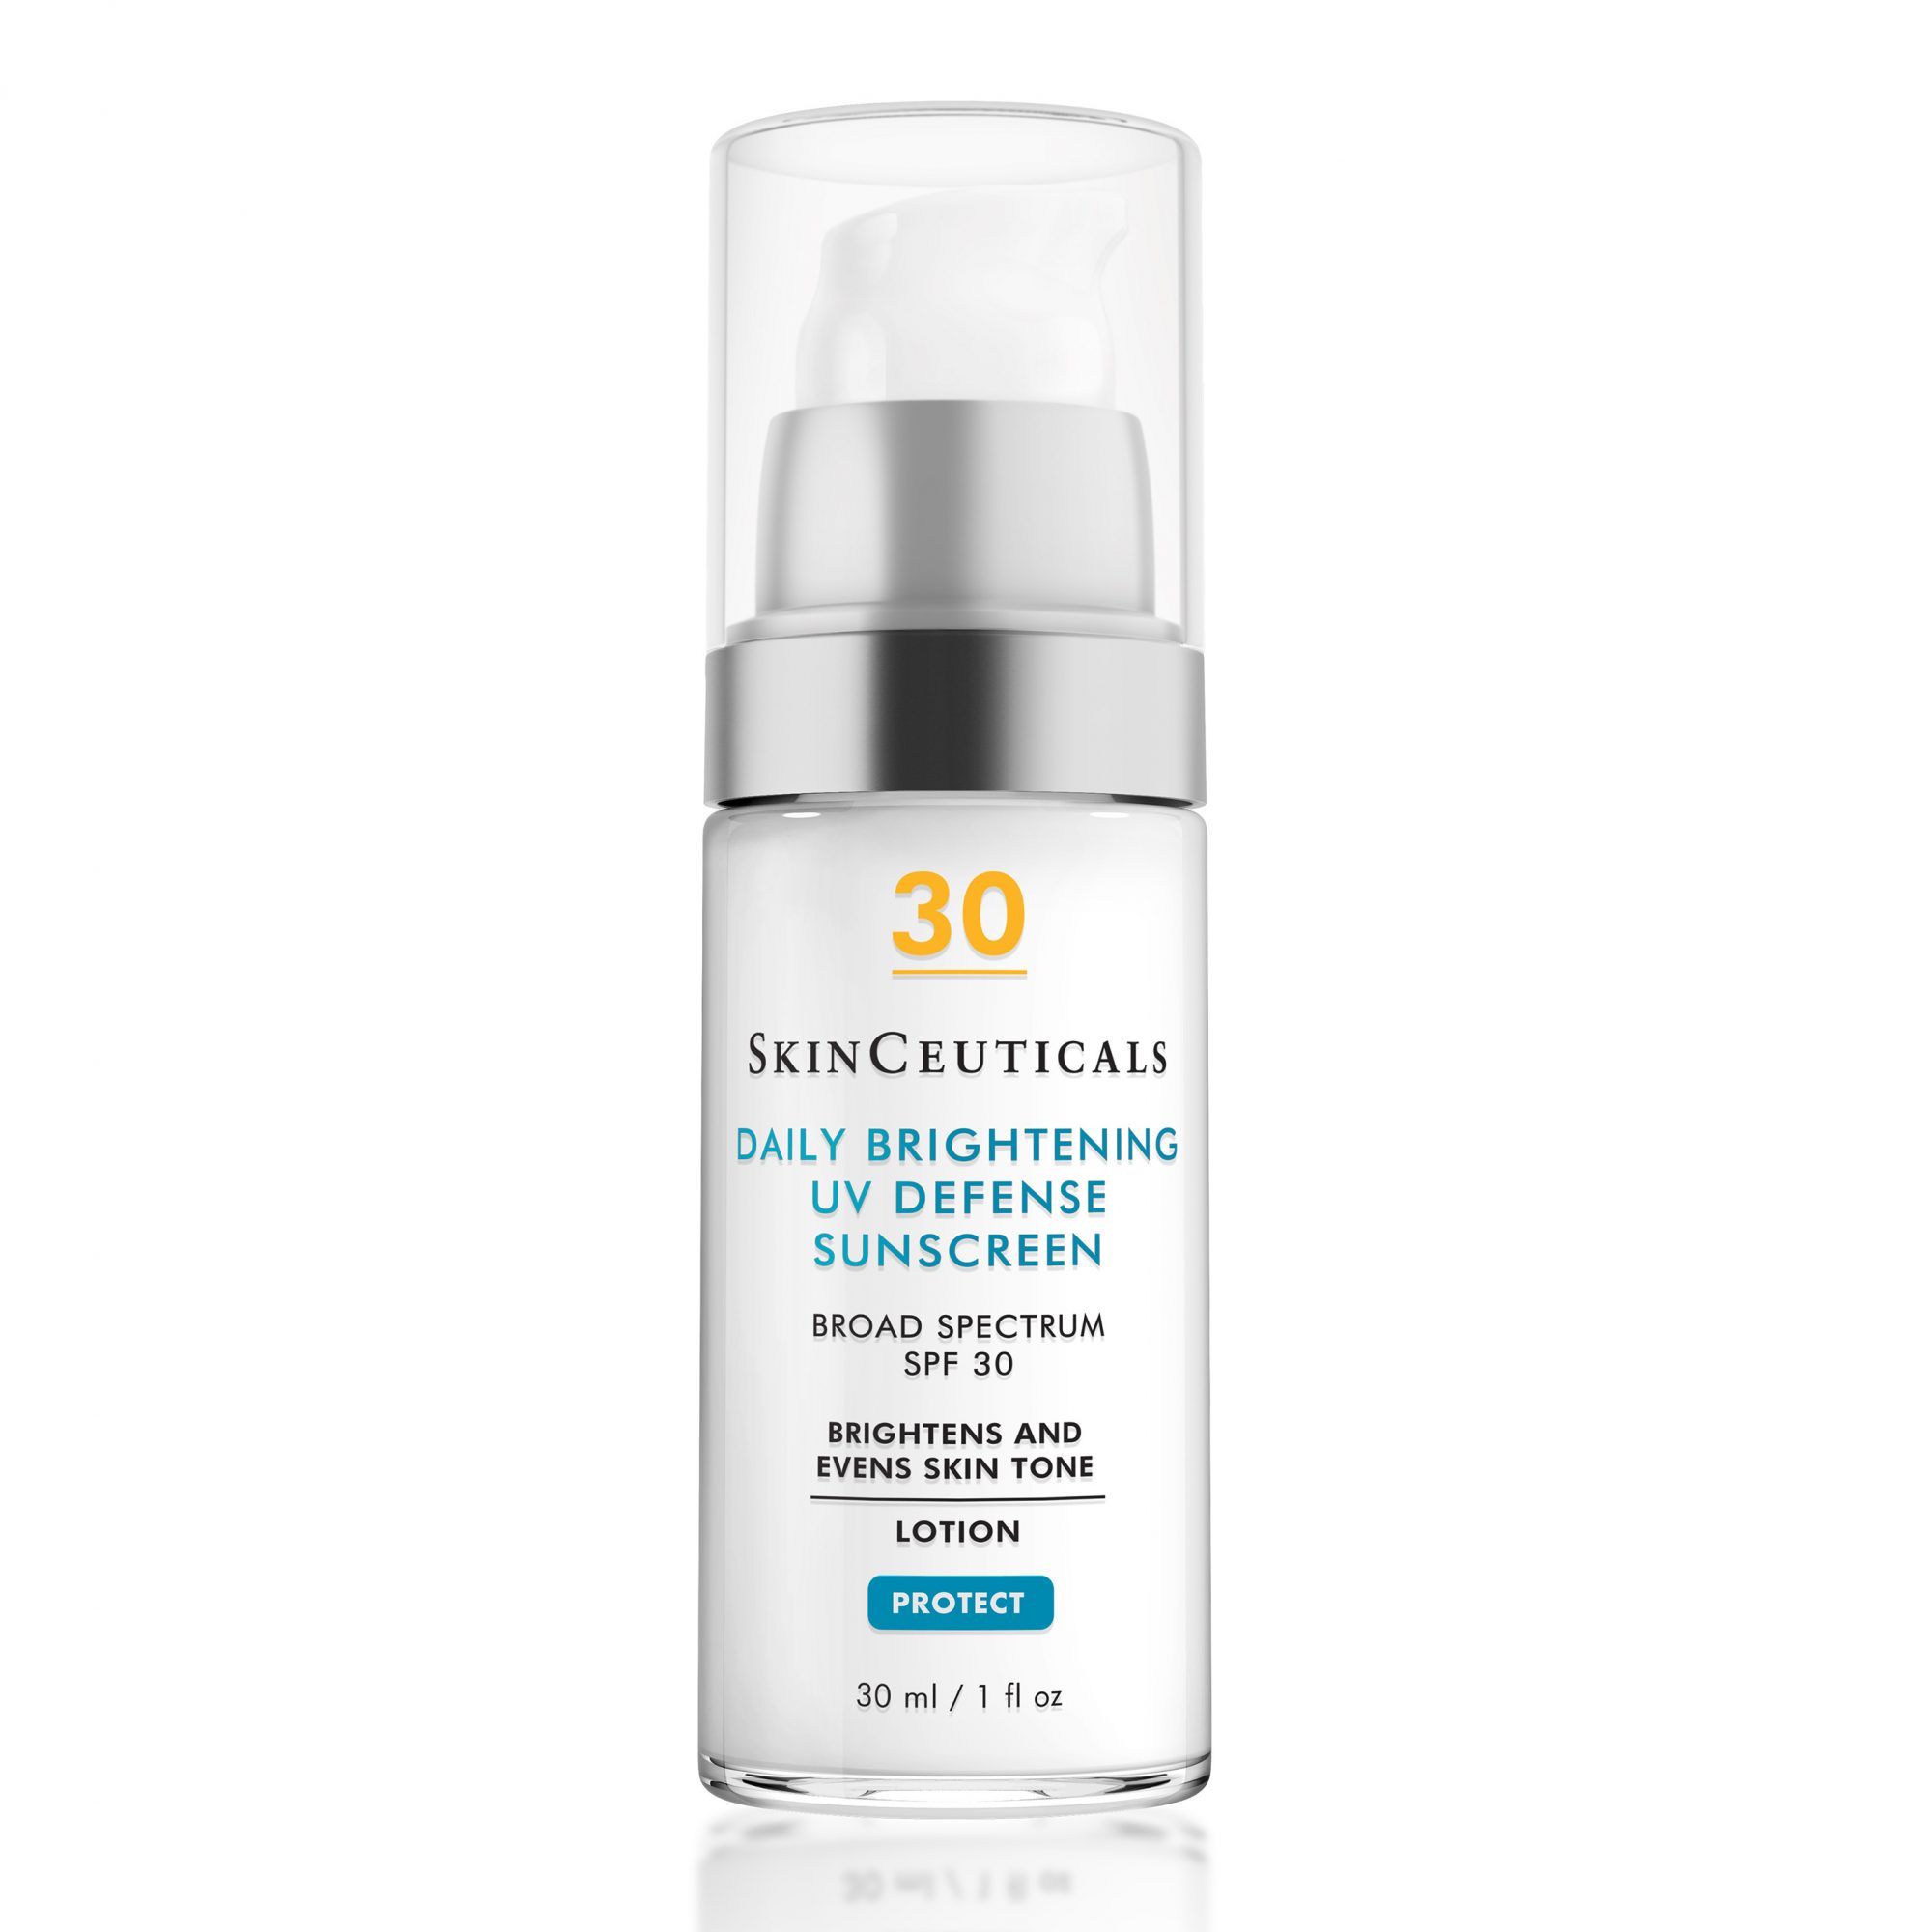 SkinCeuticals Daily Brightening UV Defense aurinkovoidetta SPF 30